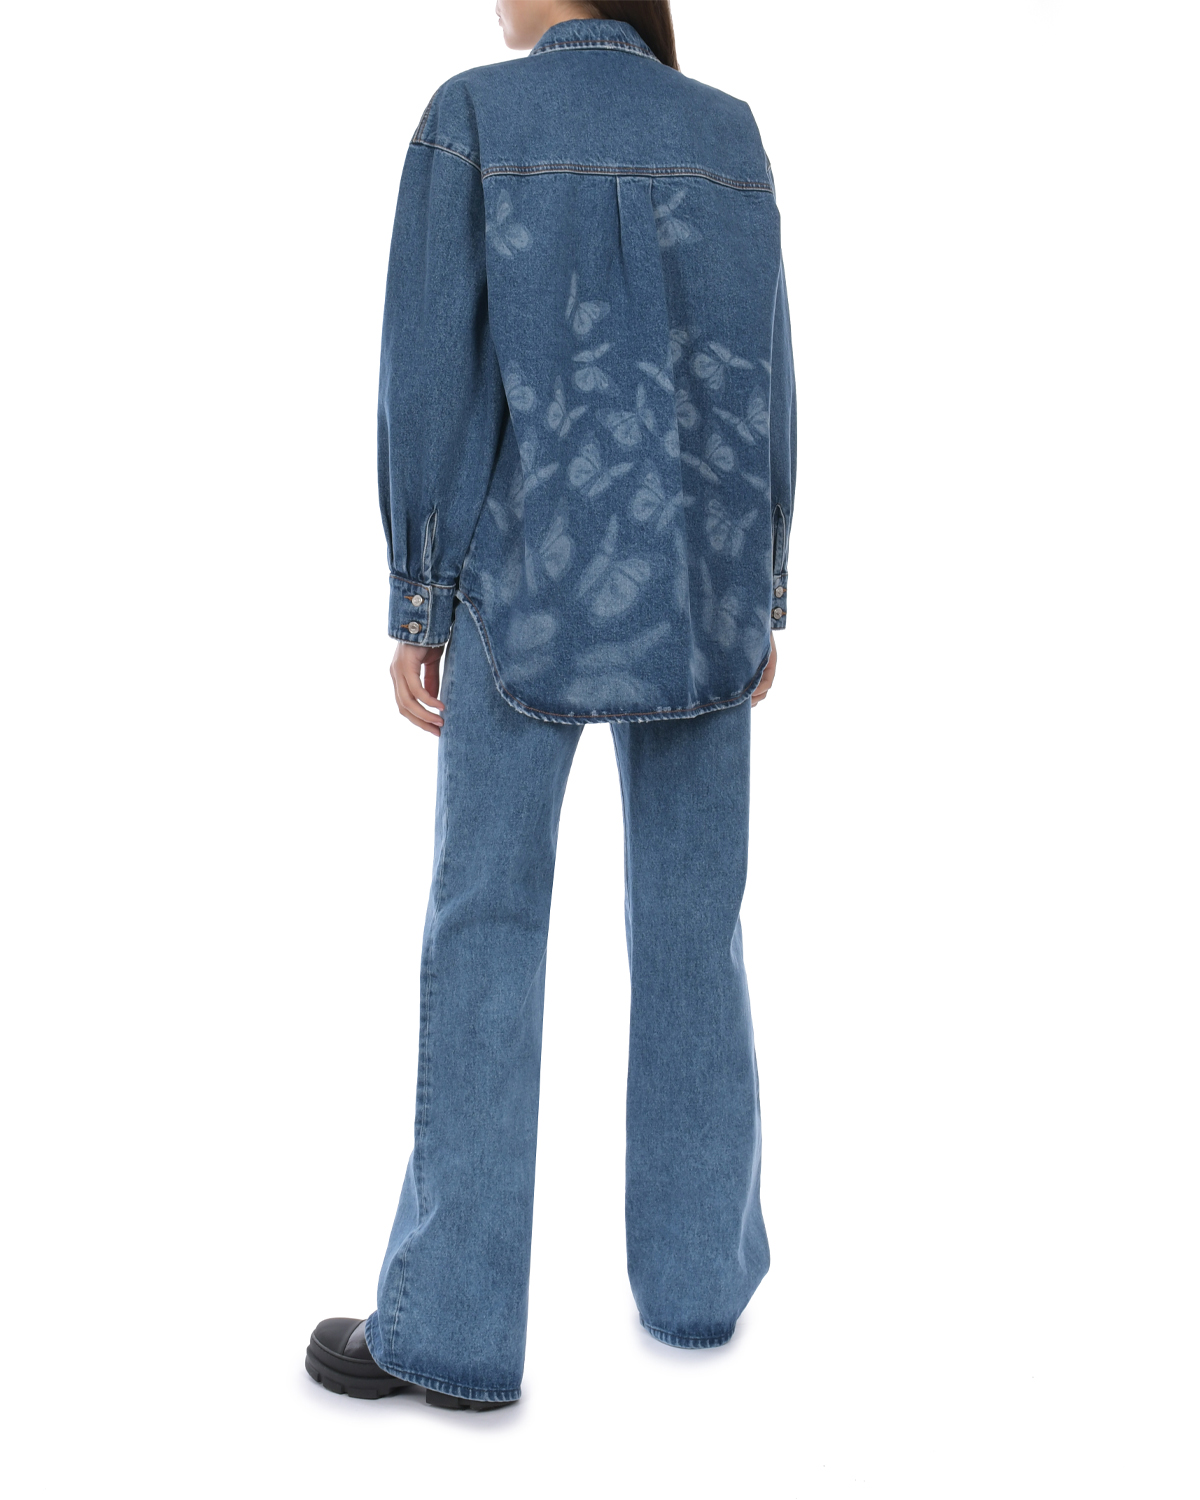 Синяя джинсовая рубашка с принтом "бабочки" MSGM, размер 40, цвет синий - фото 4